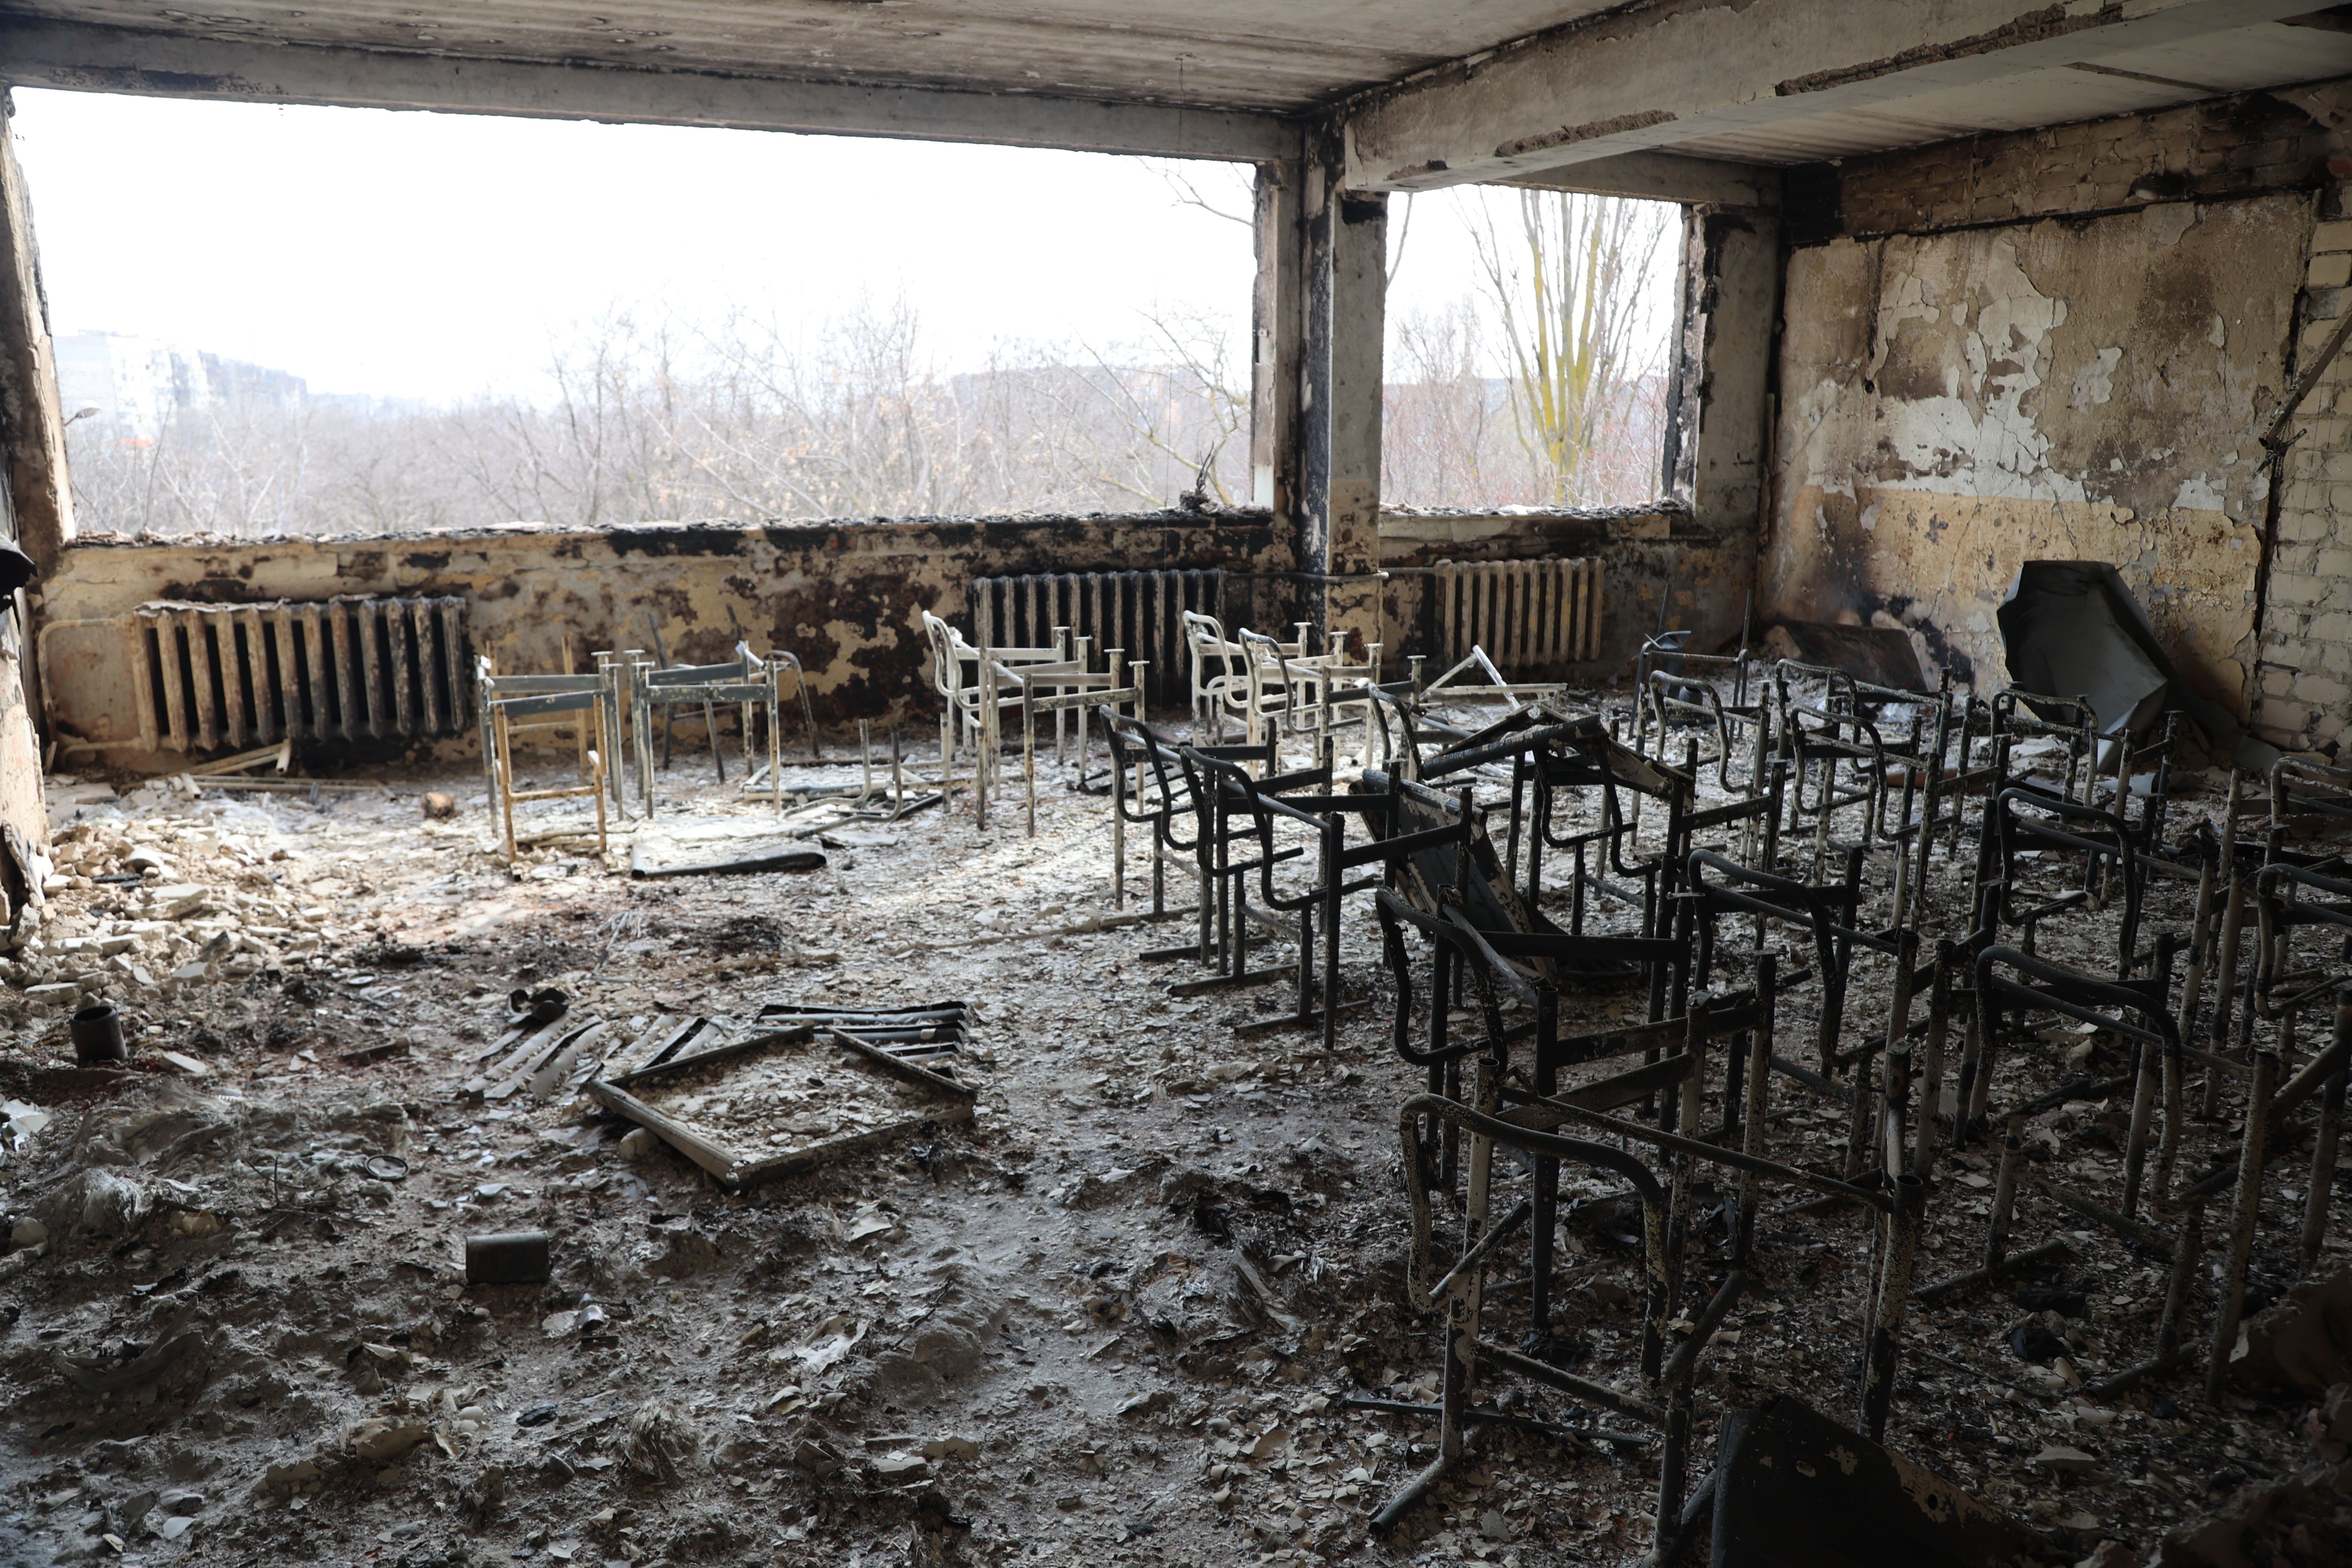   Widok zniszczonej szkoły po ostrzale w ukraińskim mieście Mariupol pod kontrolą rosyjskich wojskowych i prorosyjskich separatystów, 29 marca.